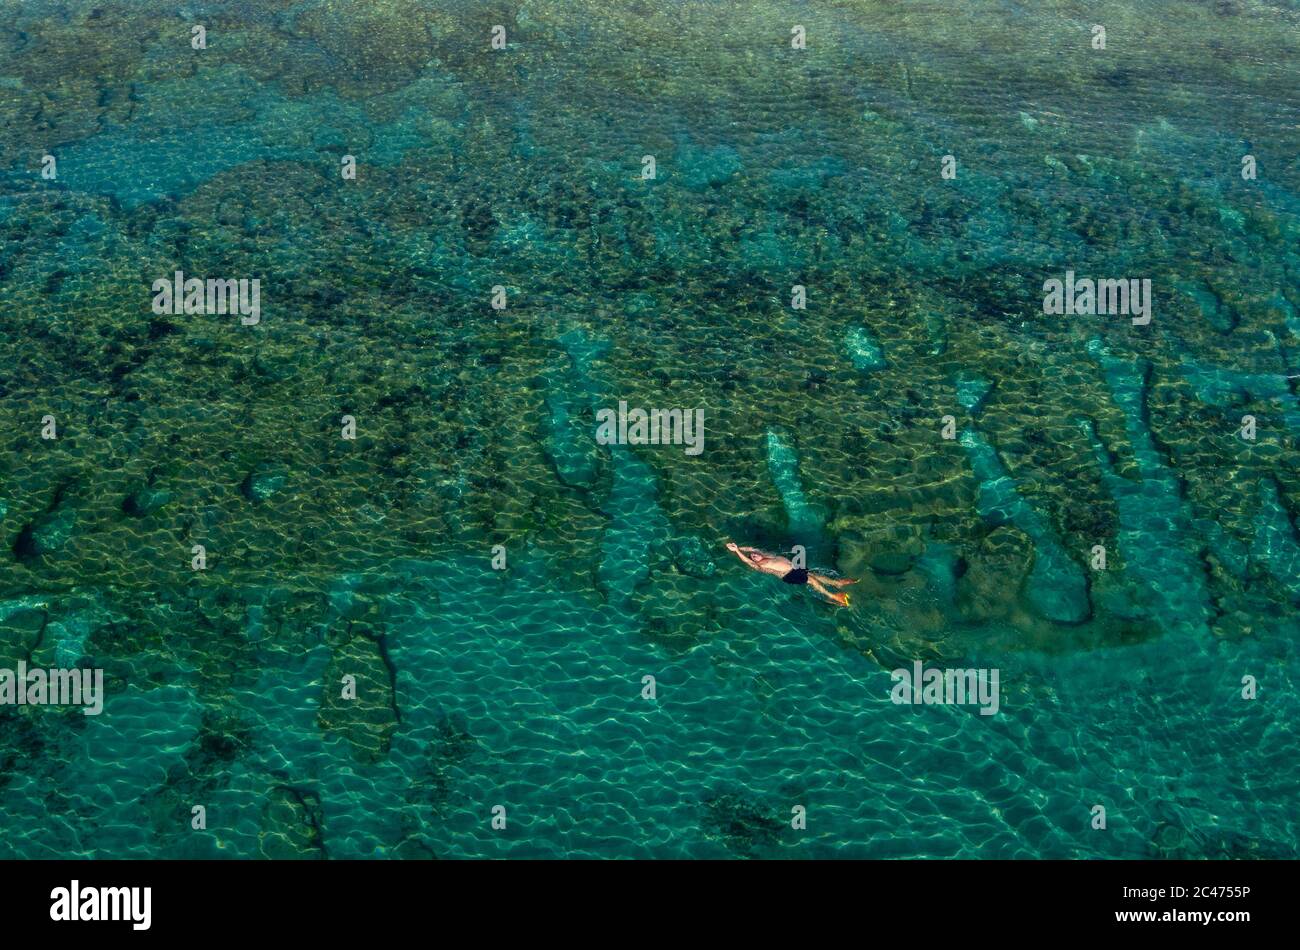 Tequesta, Floride, États-Unis. 24 juin 2020. Un homme flotte sur son dos pendant une matinée à nager dans l'océan. Crédit : Greg Lovett/ZUMA Wire/Alay Live News Banque D'Images